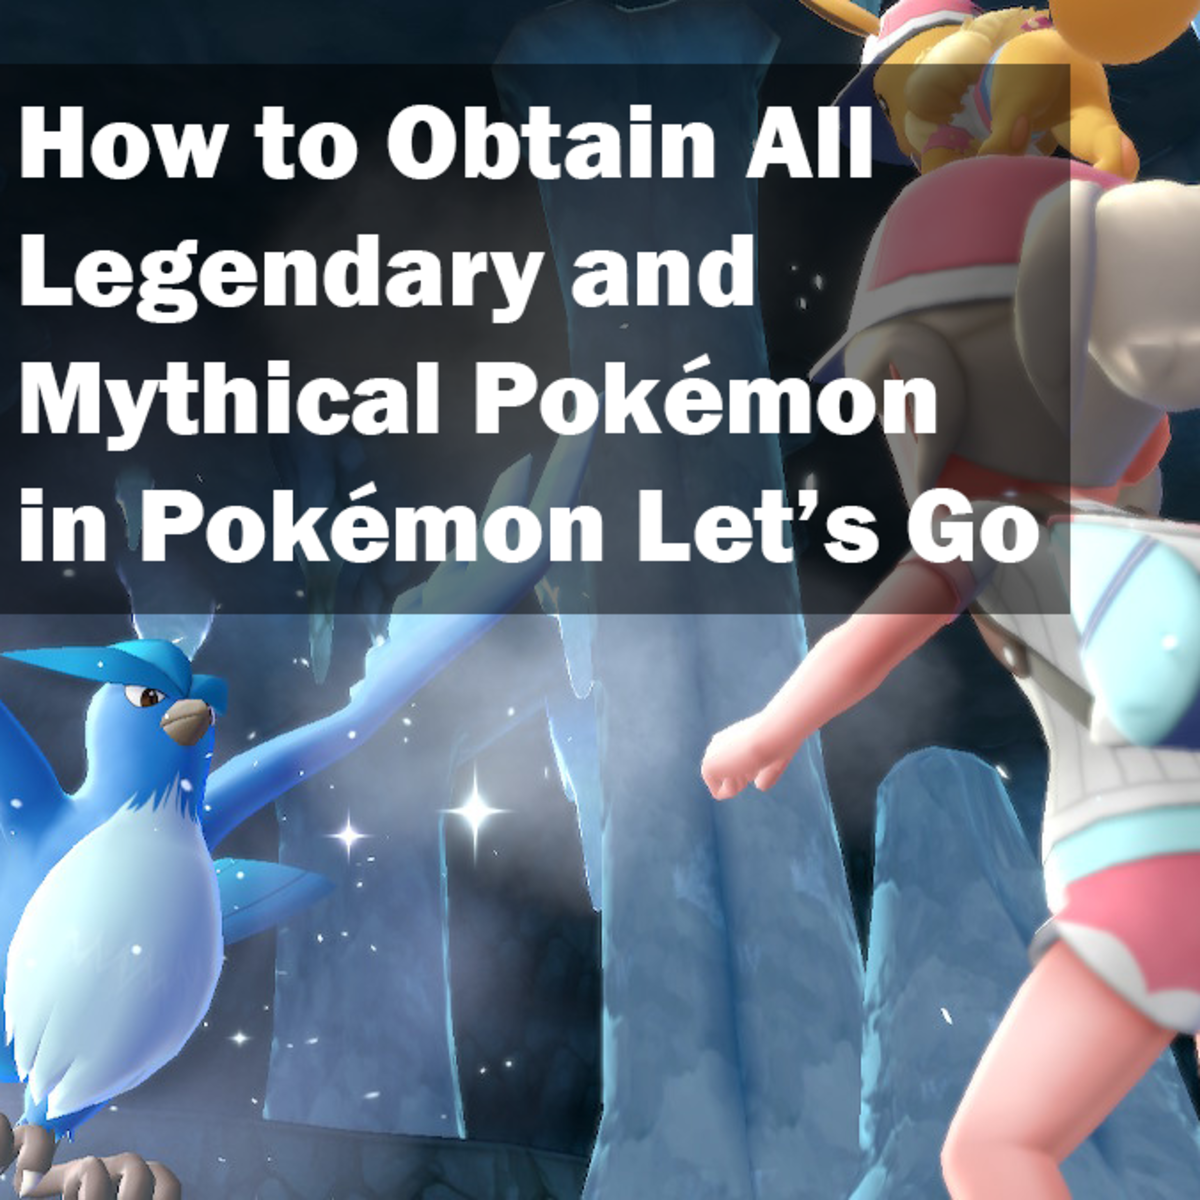 How To Obtain All Legendary And Mythical Pokémon In Pokémon